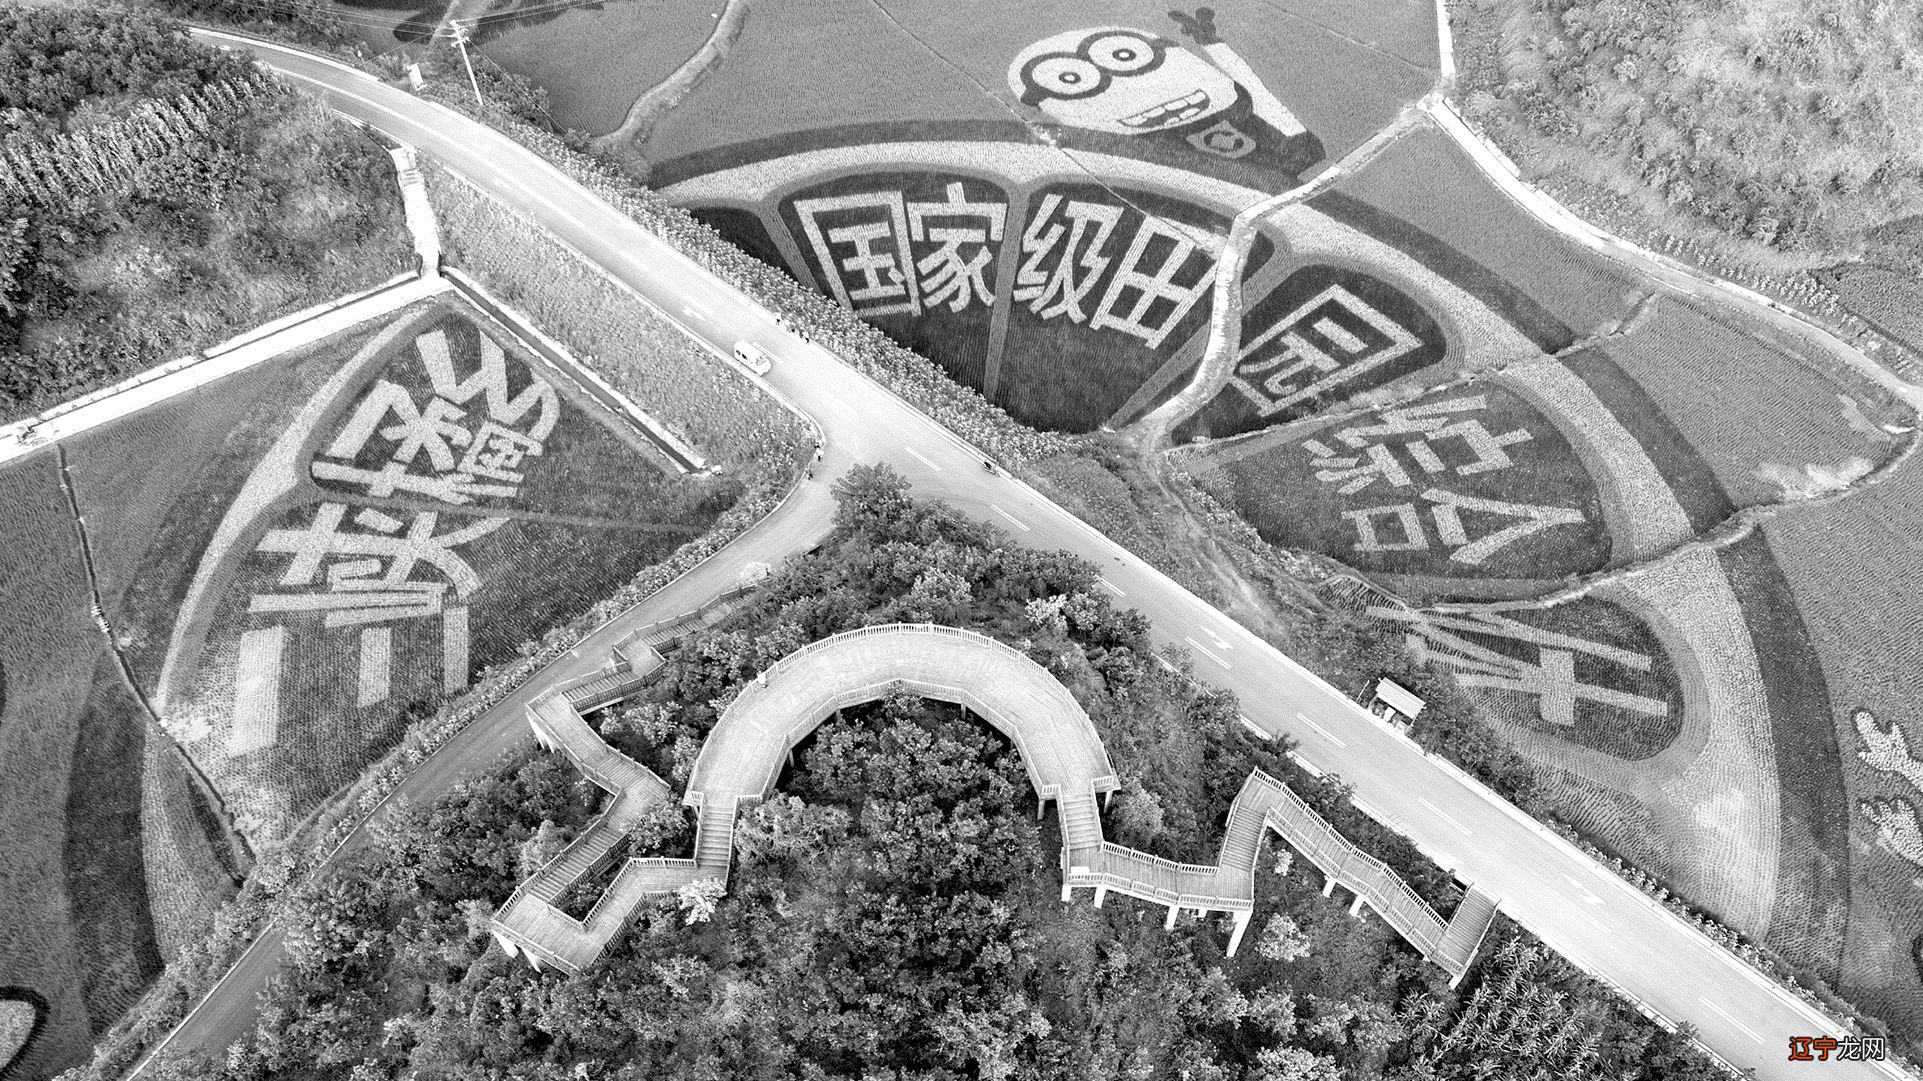 俯瞰新立柑橘特色小镇 重庆市忠县文化和旅游发展委员会 供图